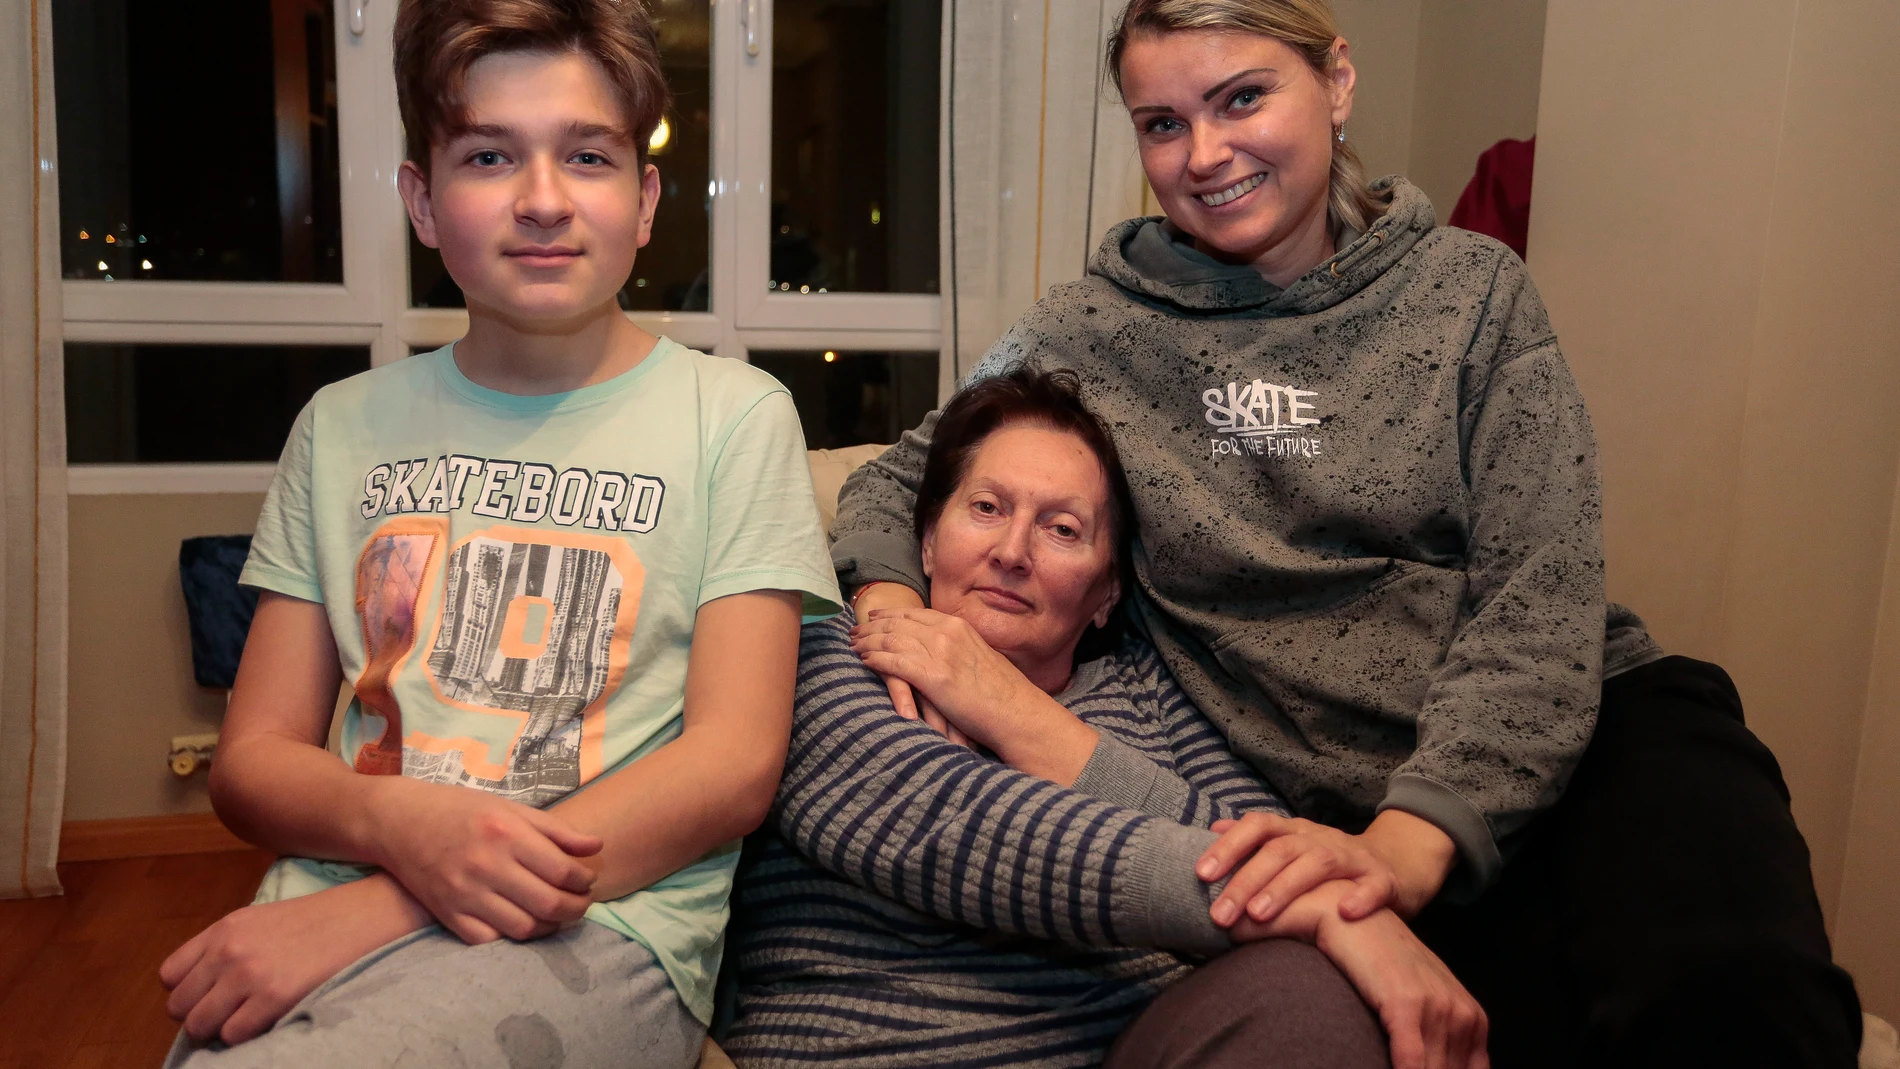 Una familia de ucranianos disfruta la Navidad en León tras abandonar su hogar por la guerra en Lugansk (Dombás). En la imagen, la abuela paterna, Larissa Radchenko, el pequeño de la familia, Iván Radchenko y la madre, Olena Khodyka